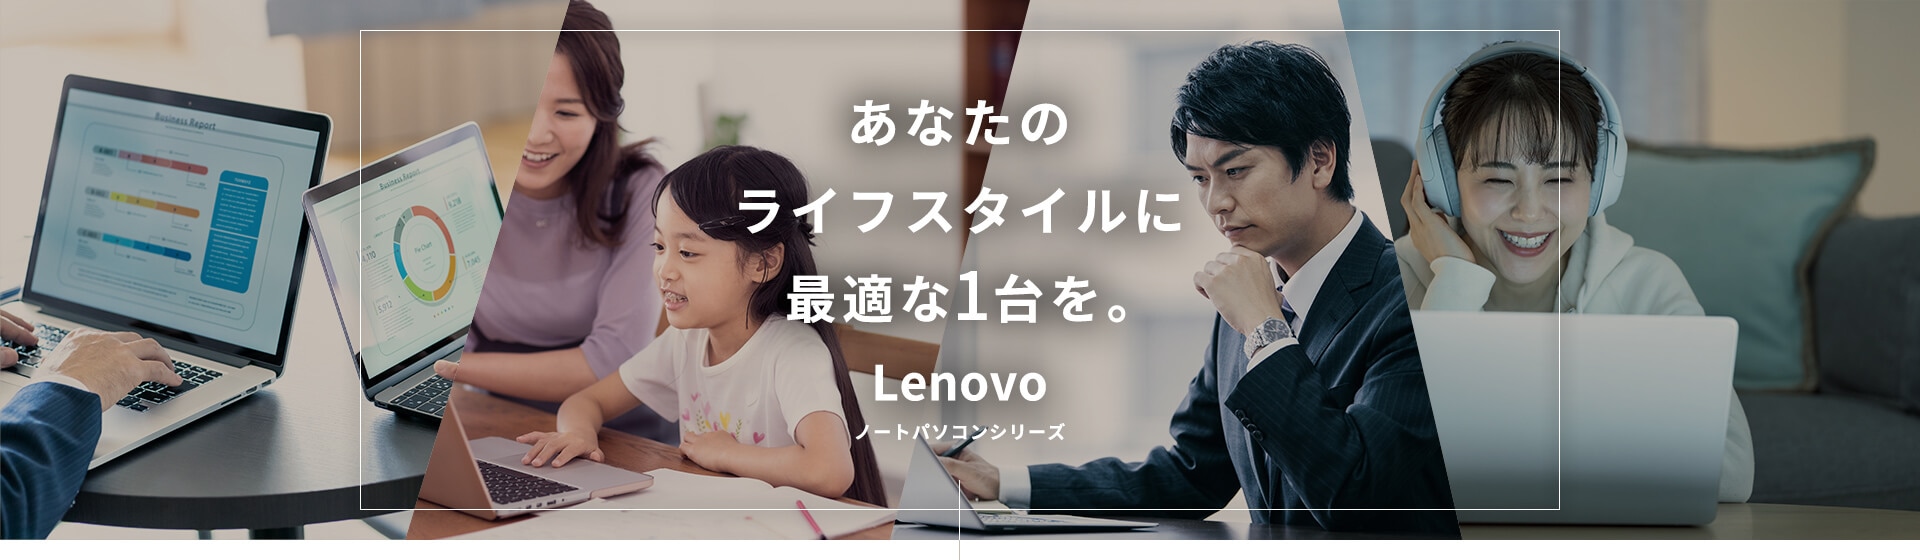 あなたのライフスタイルに最適な1台を。Lenovo ノートパソコンシリーズ